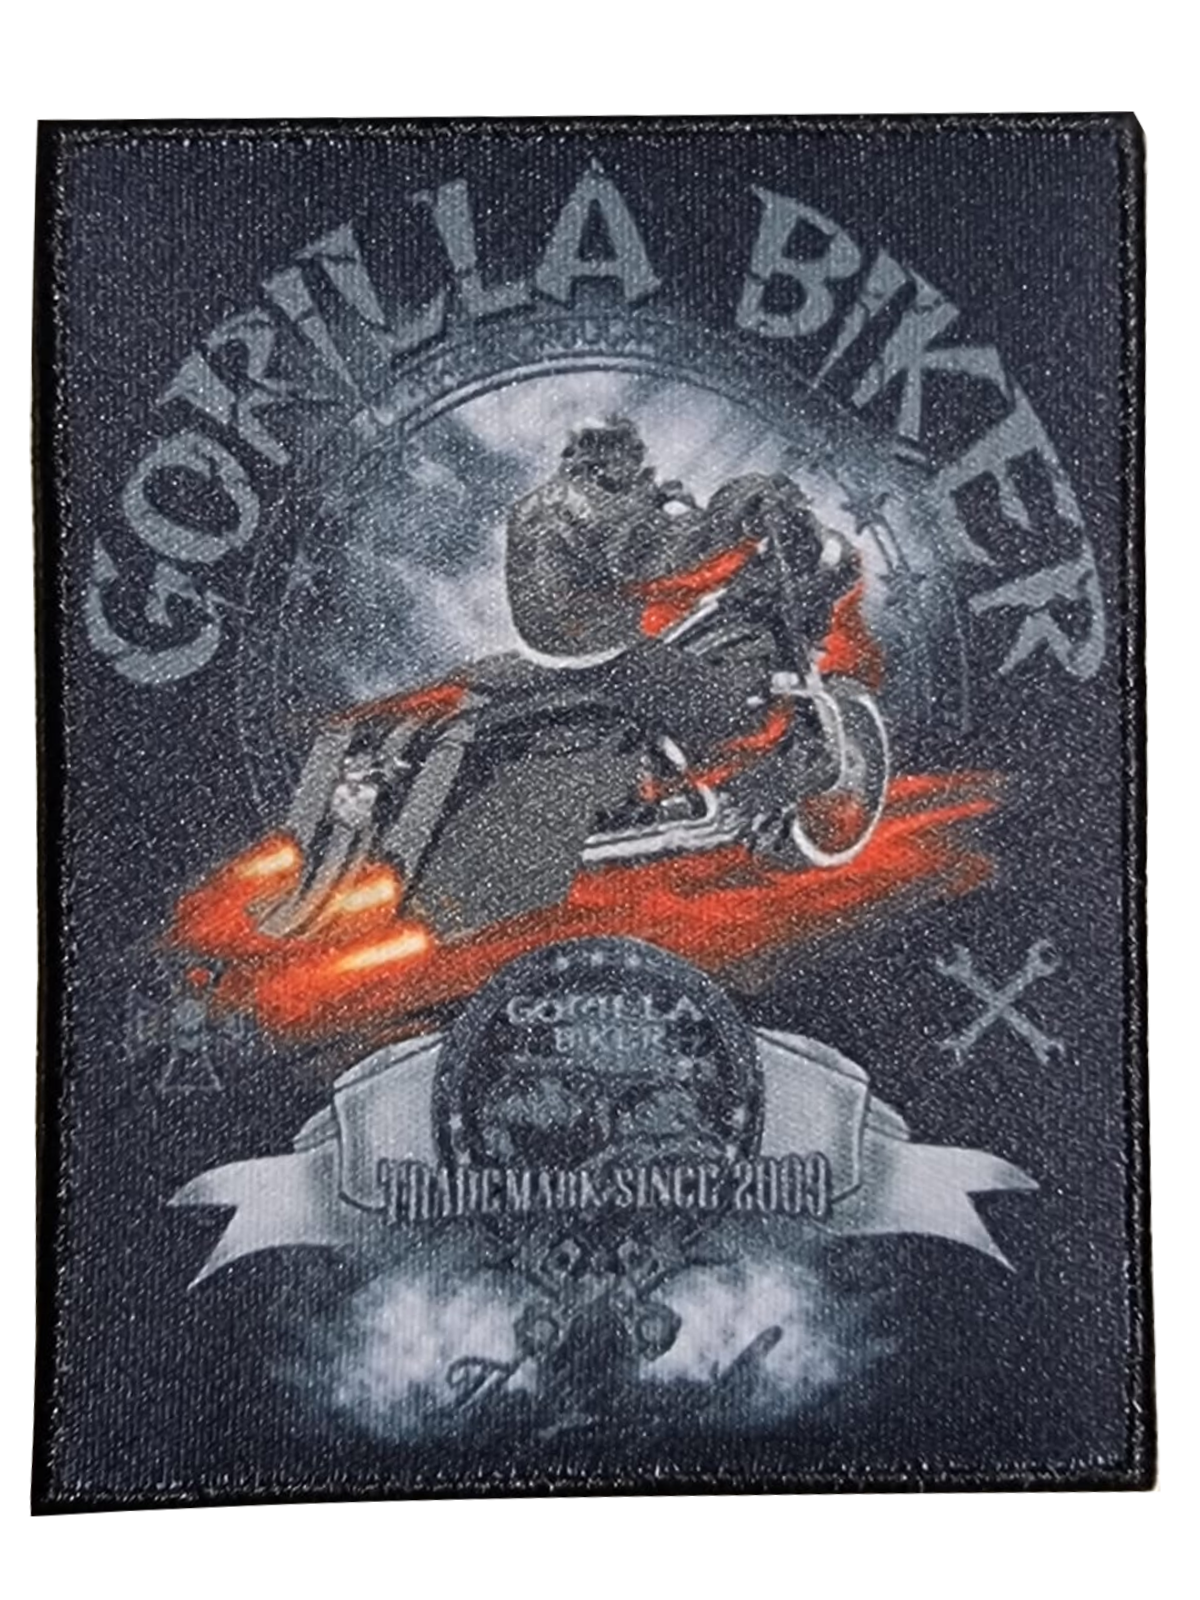 Gorilla Biker Patch ( GB74 )